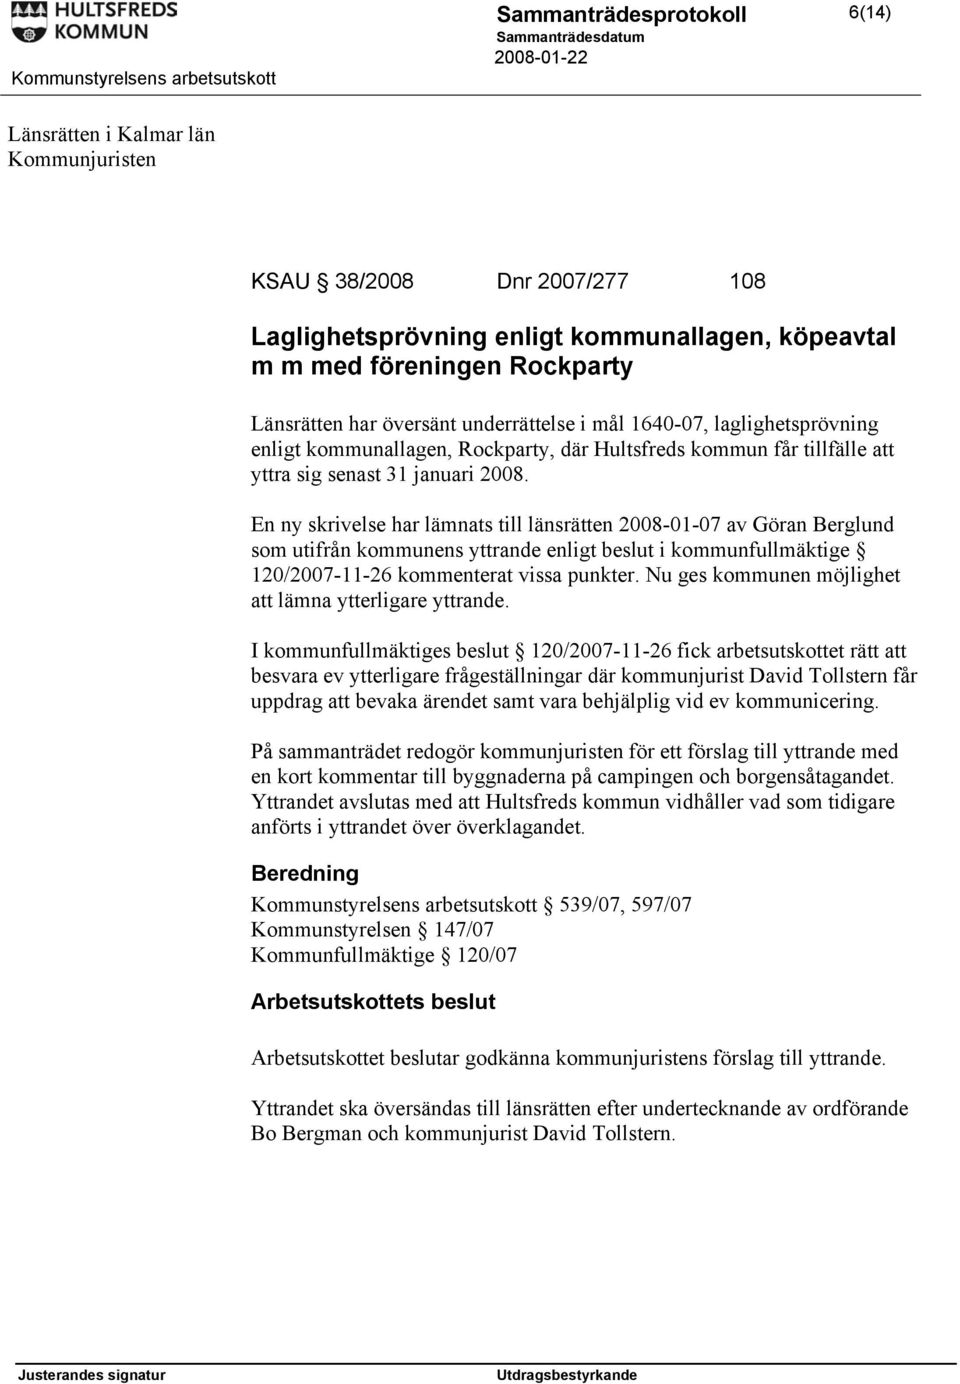 En ny skrivelse har lämnats till länsrätten 2008-01-07 av Göran Berglund som utifrån kommunens yttrande enligt beslut i kommunfullmäktige 120/2007-11-26 kommenterat vissa punkter.